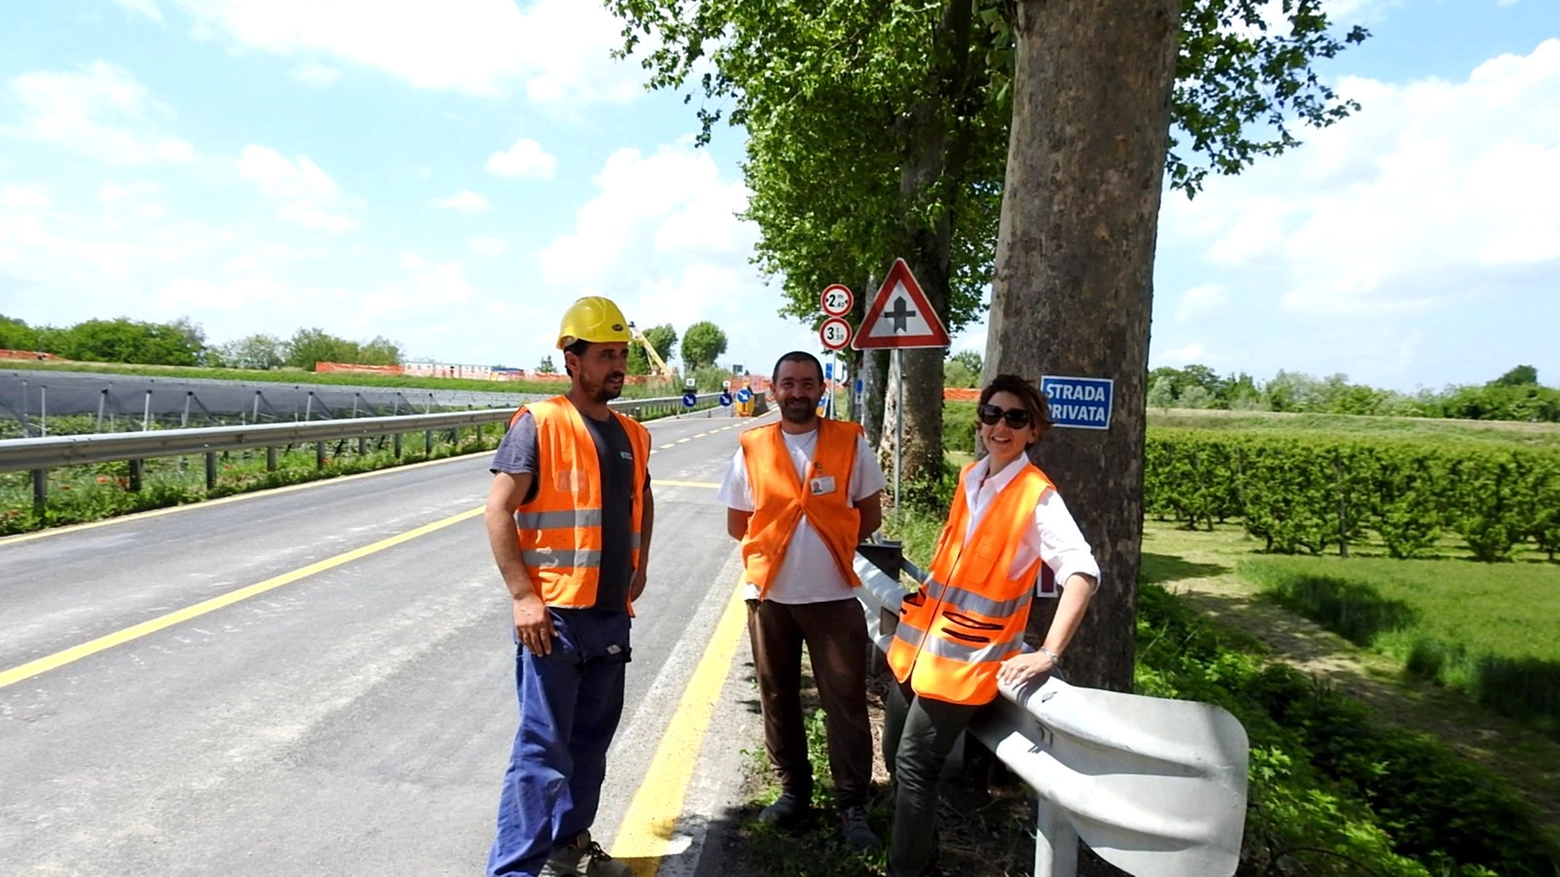 Lavori in corso per adeguamento sismico e statico del Ponte Albergone (Foto Scardovi)